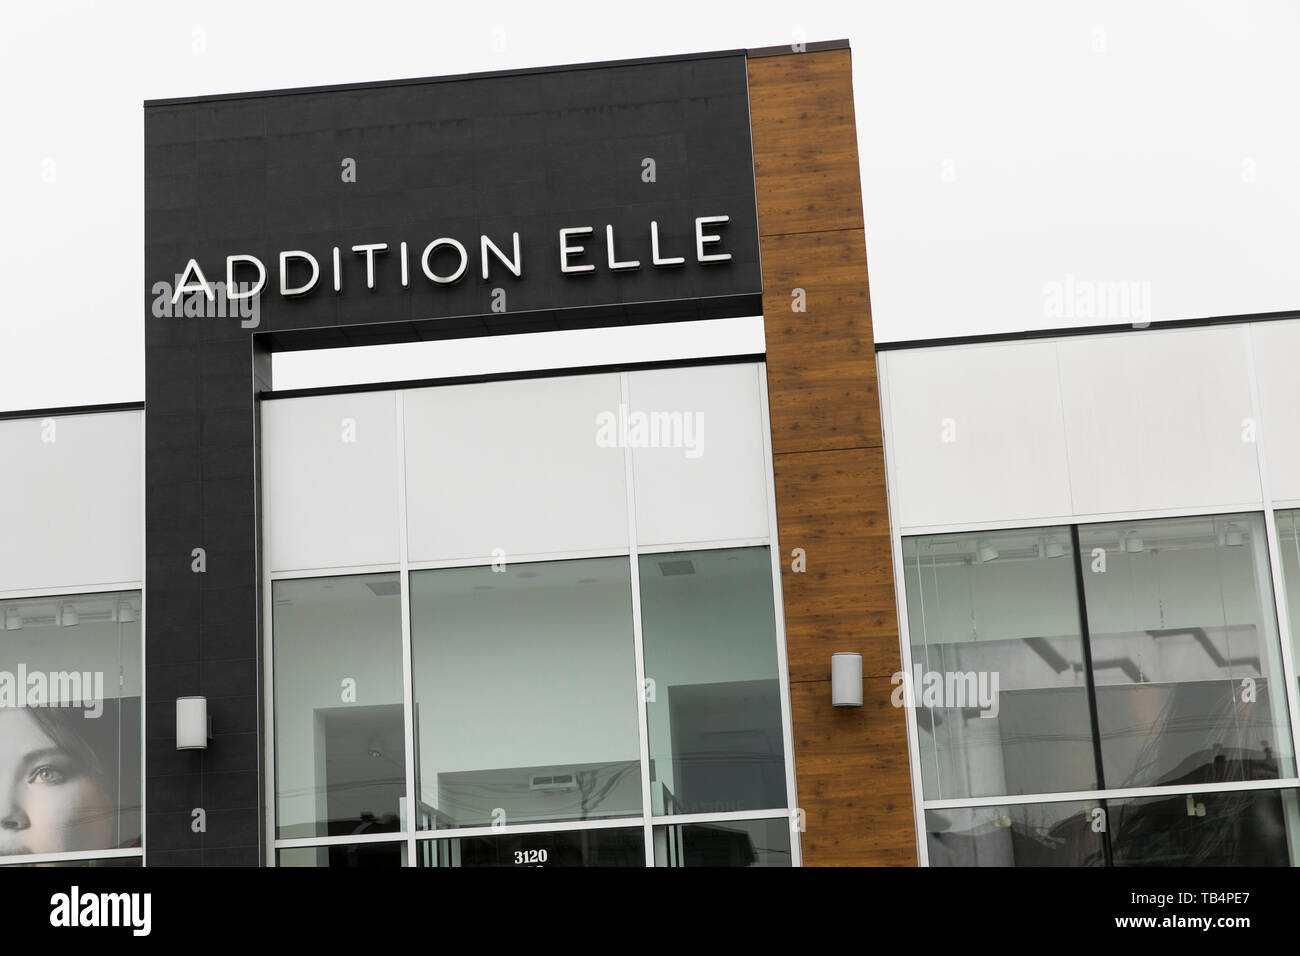 Un logo segno esterno di una aggiunta Elle store in Vaudreuil-Dorion, Quebec, Canada, il 21 aprile 2019. Foto Stock